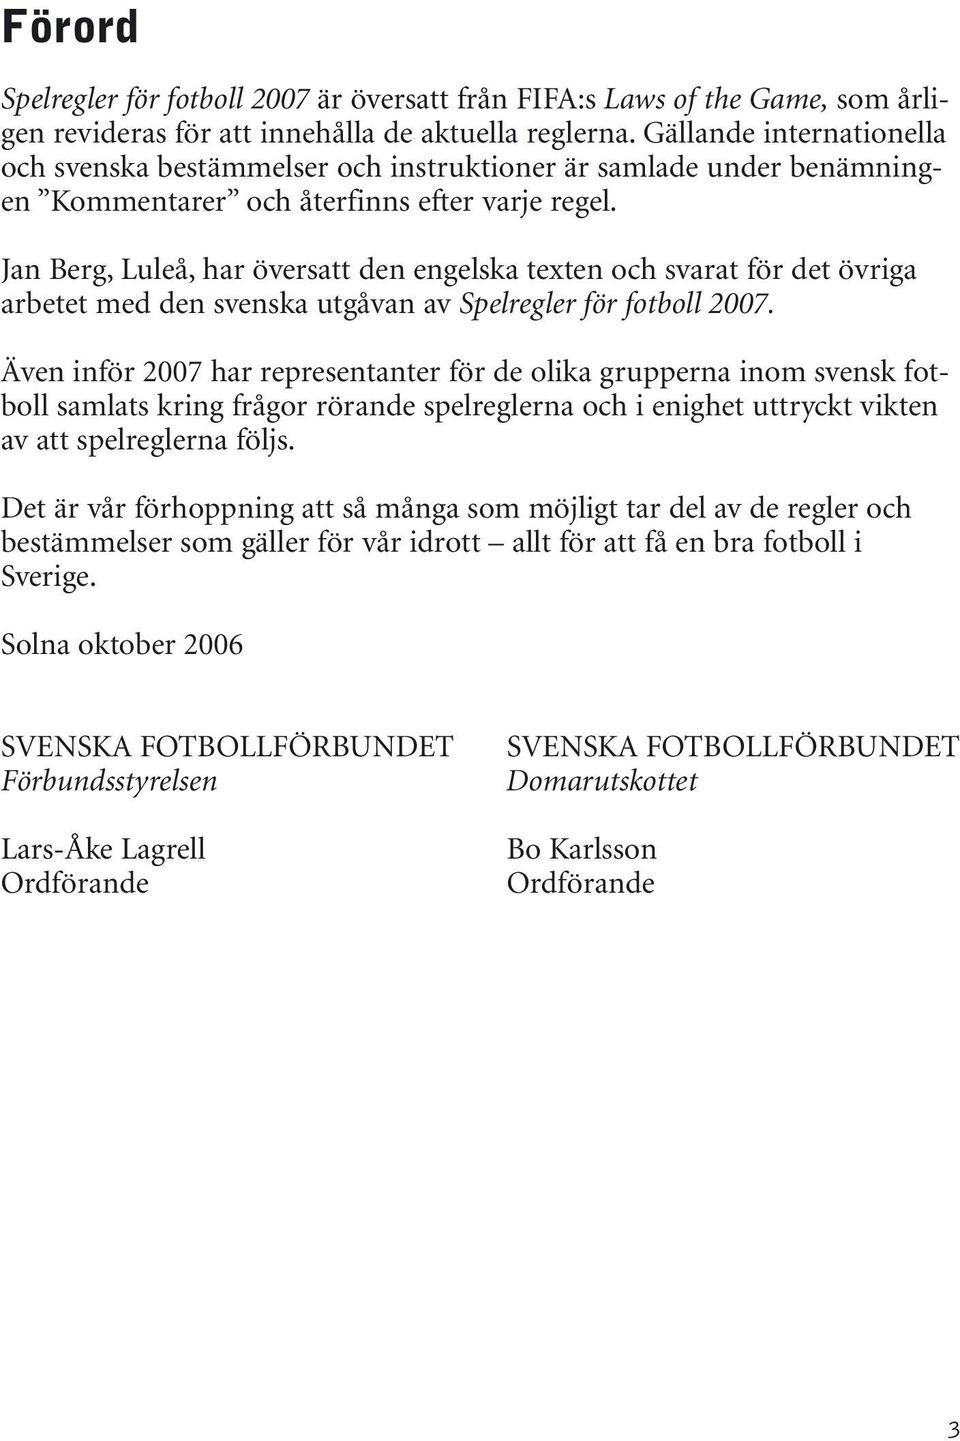 Jan Berg, Luleå, har översatt den engelska texten och svarat för det övriga arbetet med den svenska utgåvan av Spelregler för fotboll 2007.